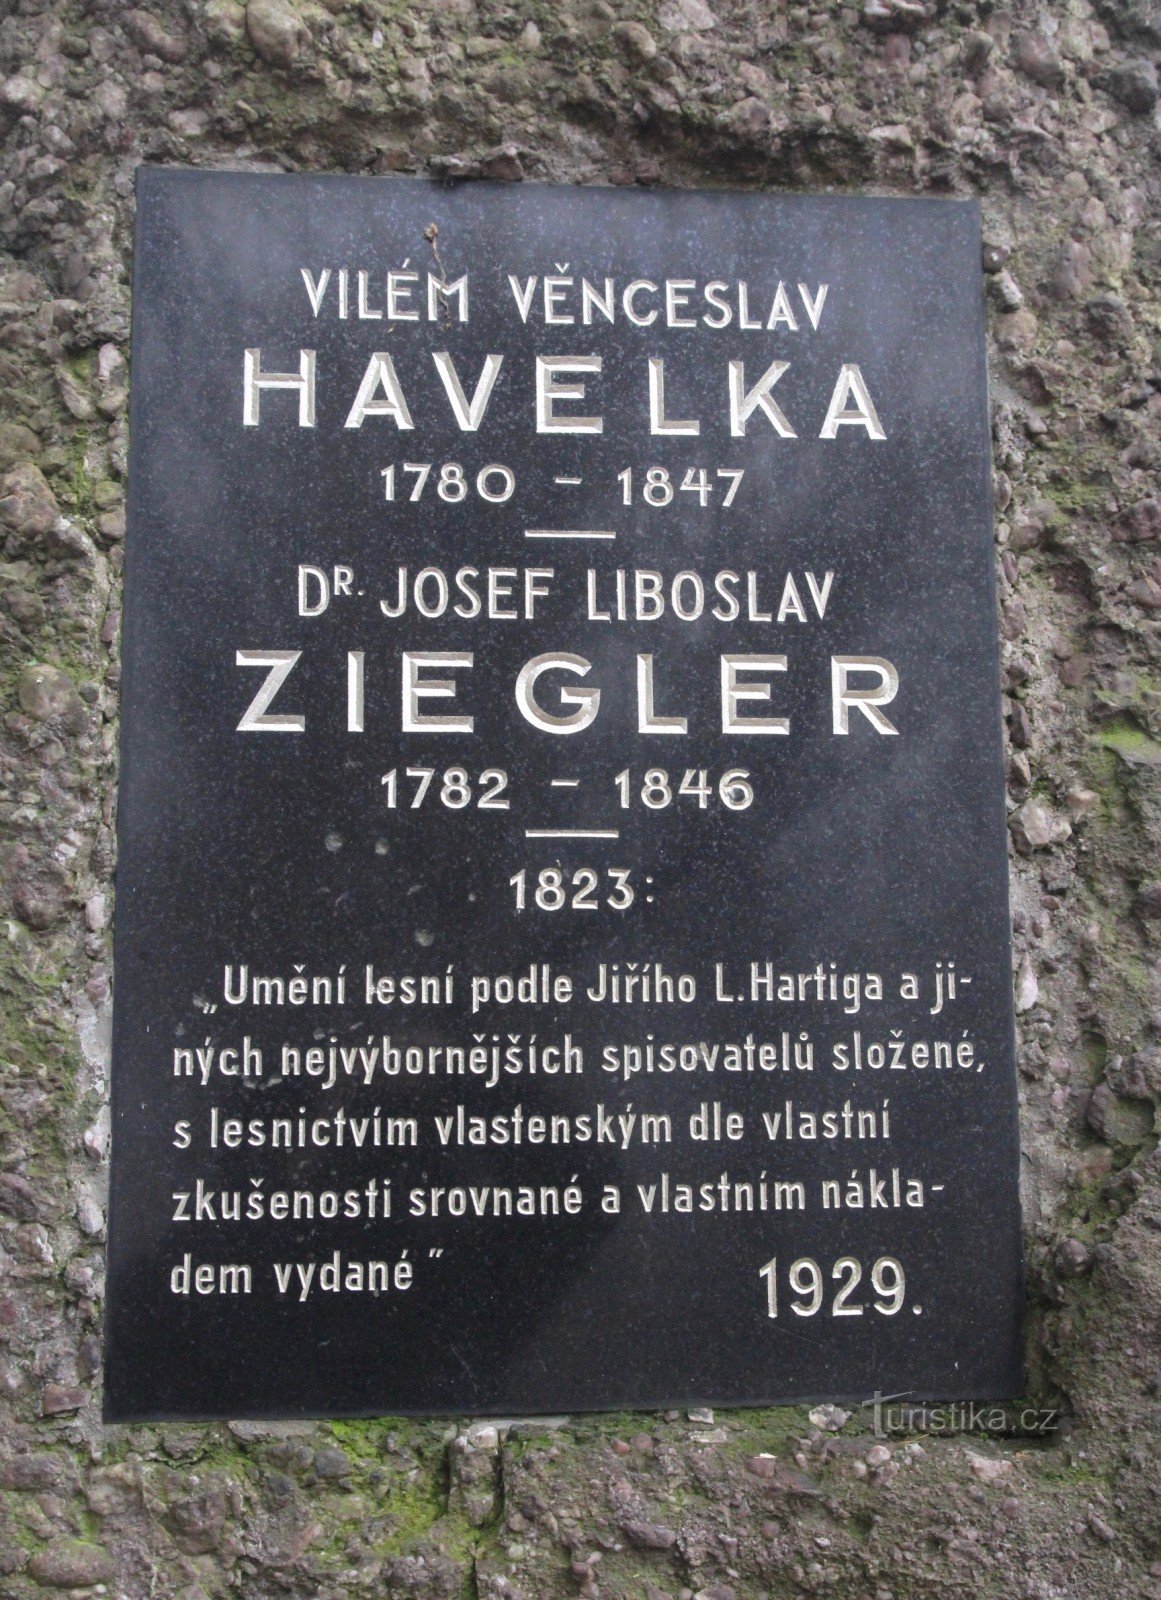 Monumento a VV Havelka y JL Ziegler